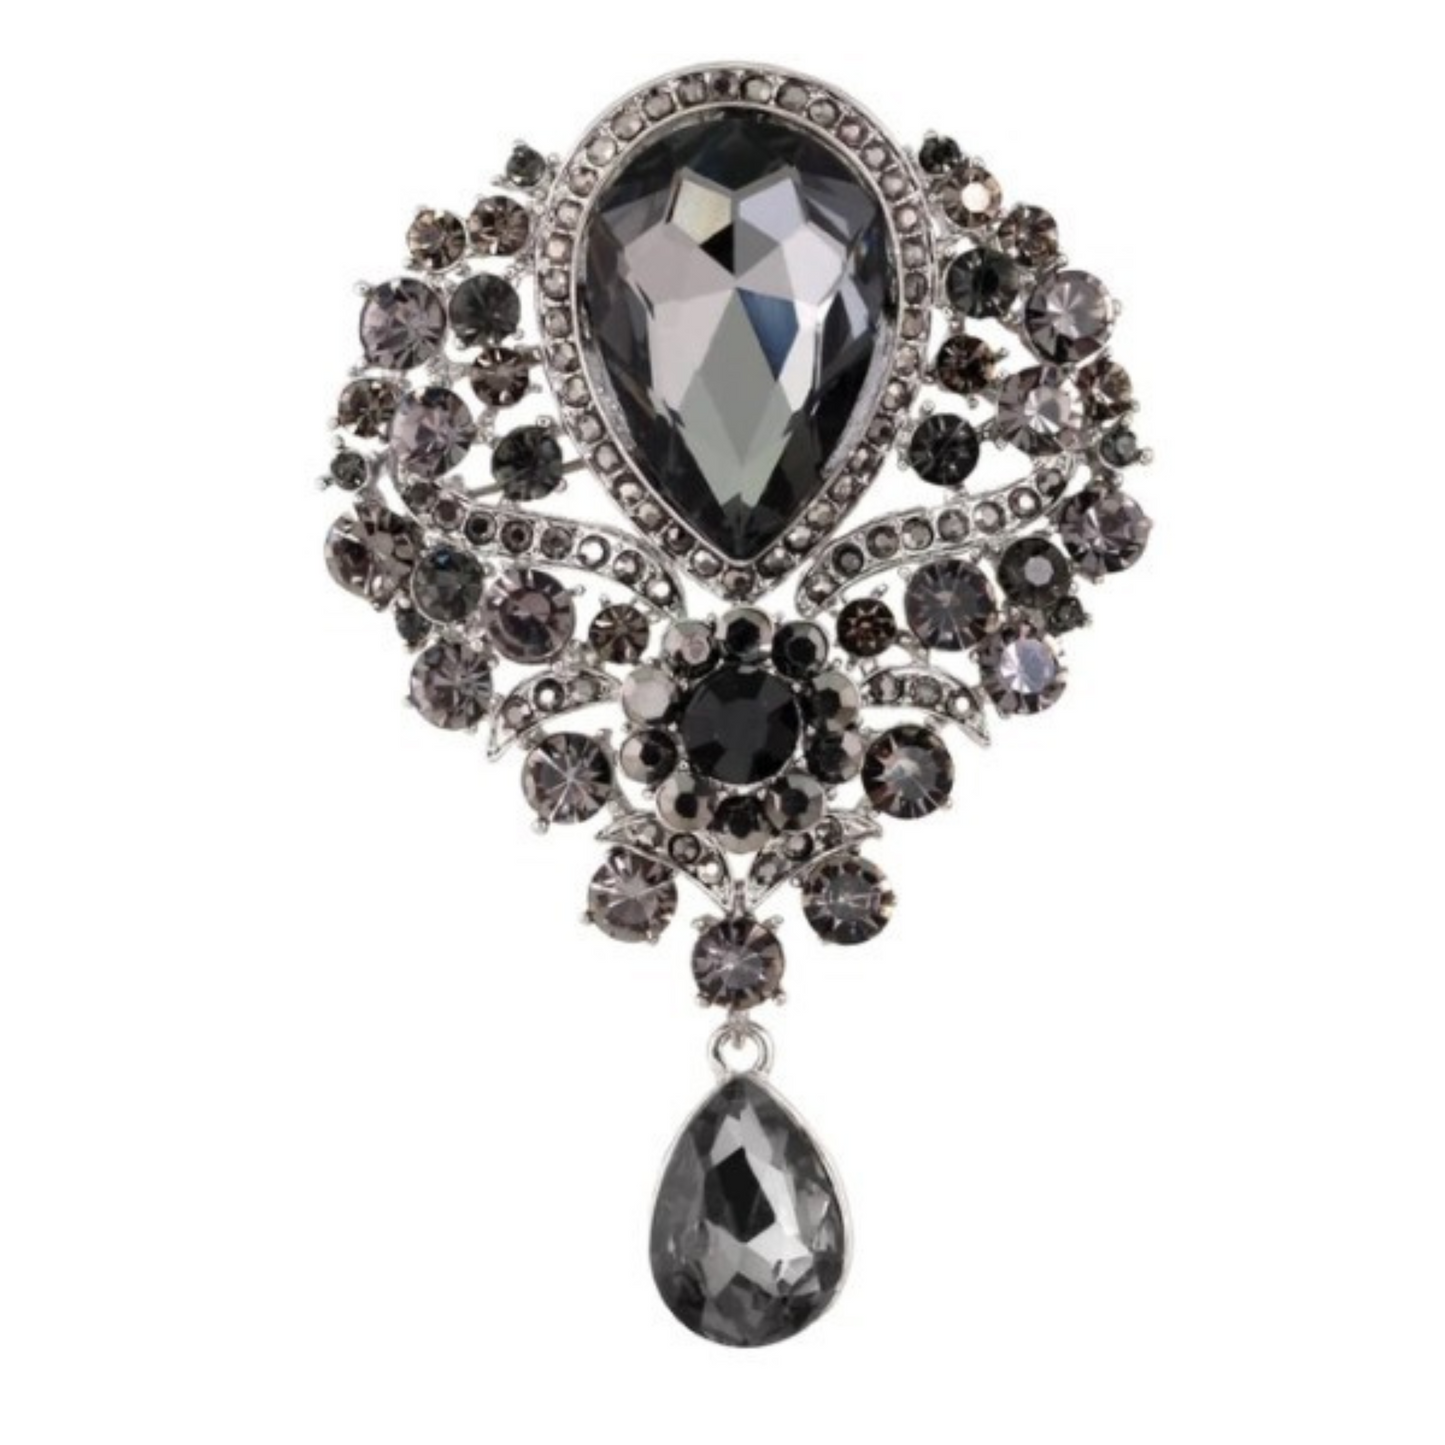 Dark Grey Teardrop Crystal And Rhinestones Fashion Brooch Pin